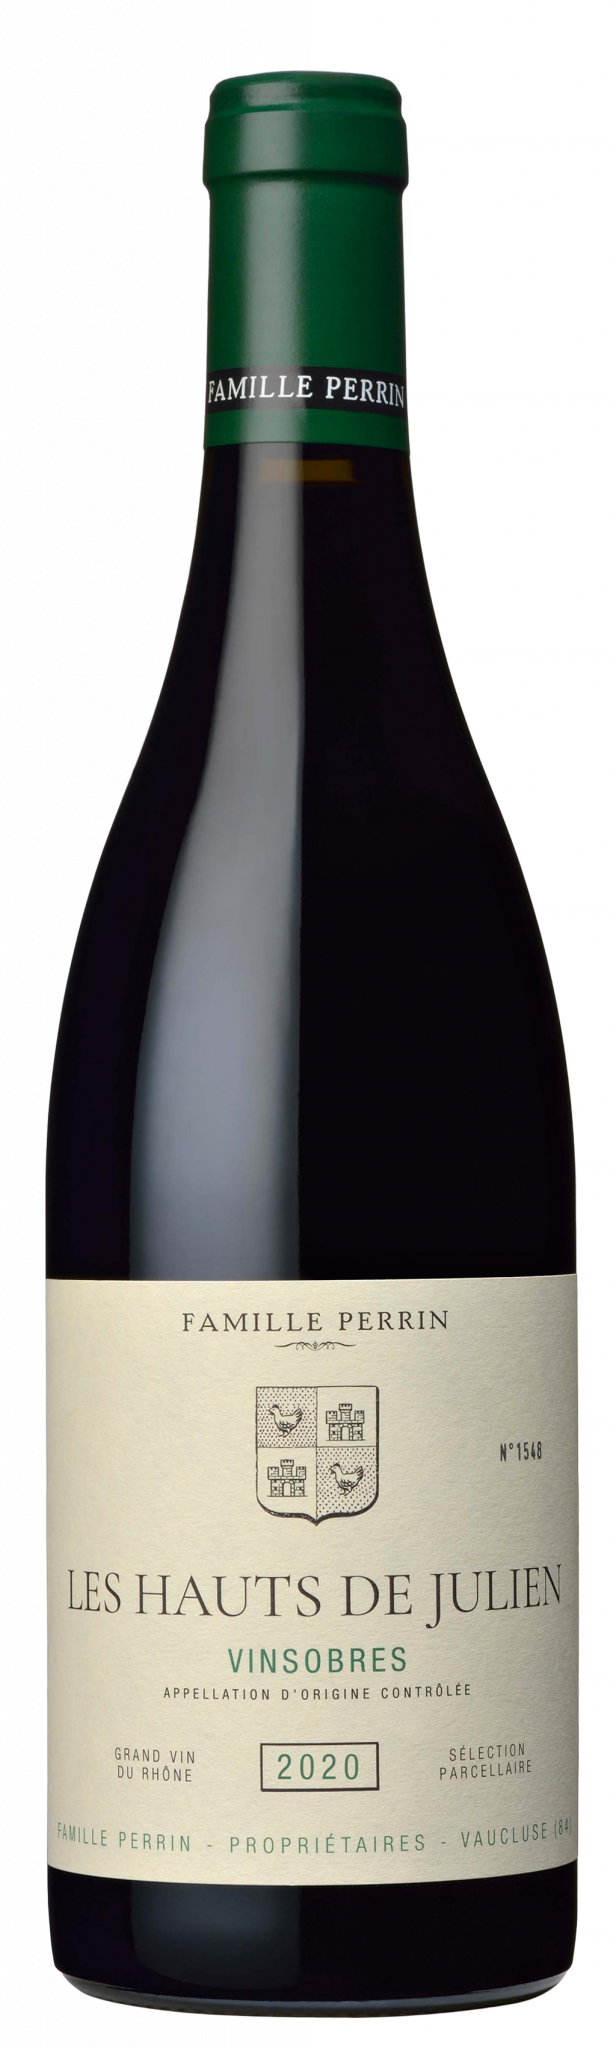 Famille Perrin Sélections Parcellaires Vinsobres - Les Hauts de Julien Vieilles Vignes - 2020